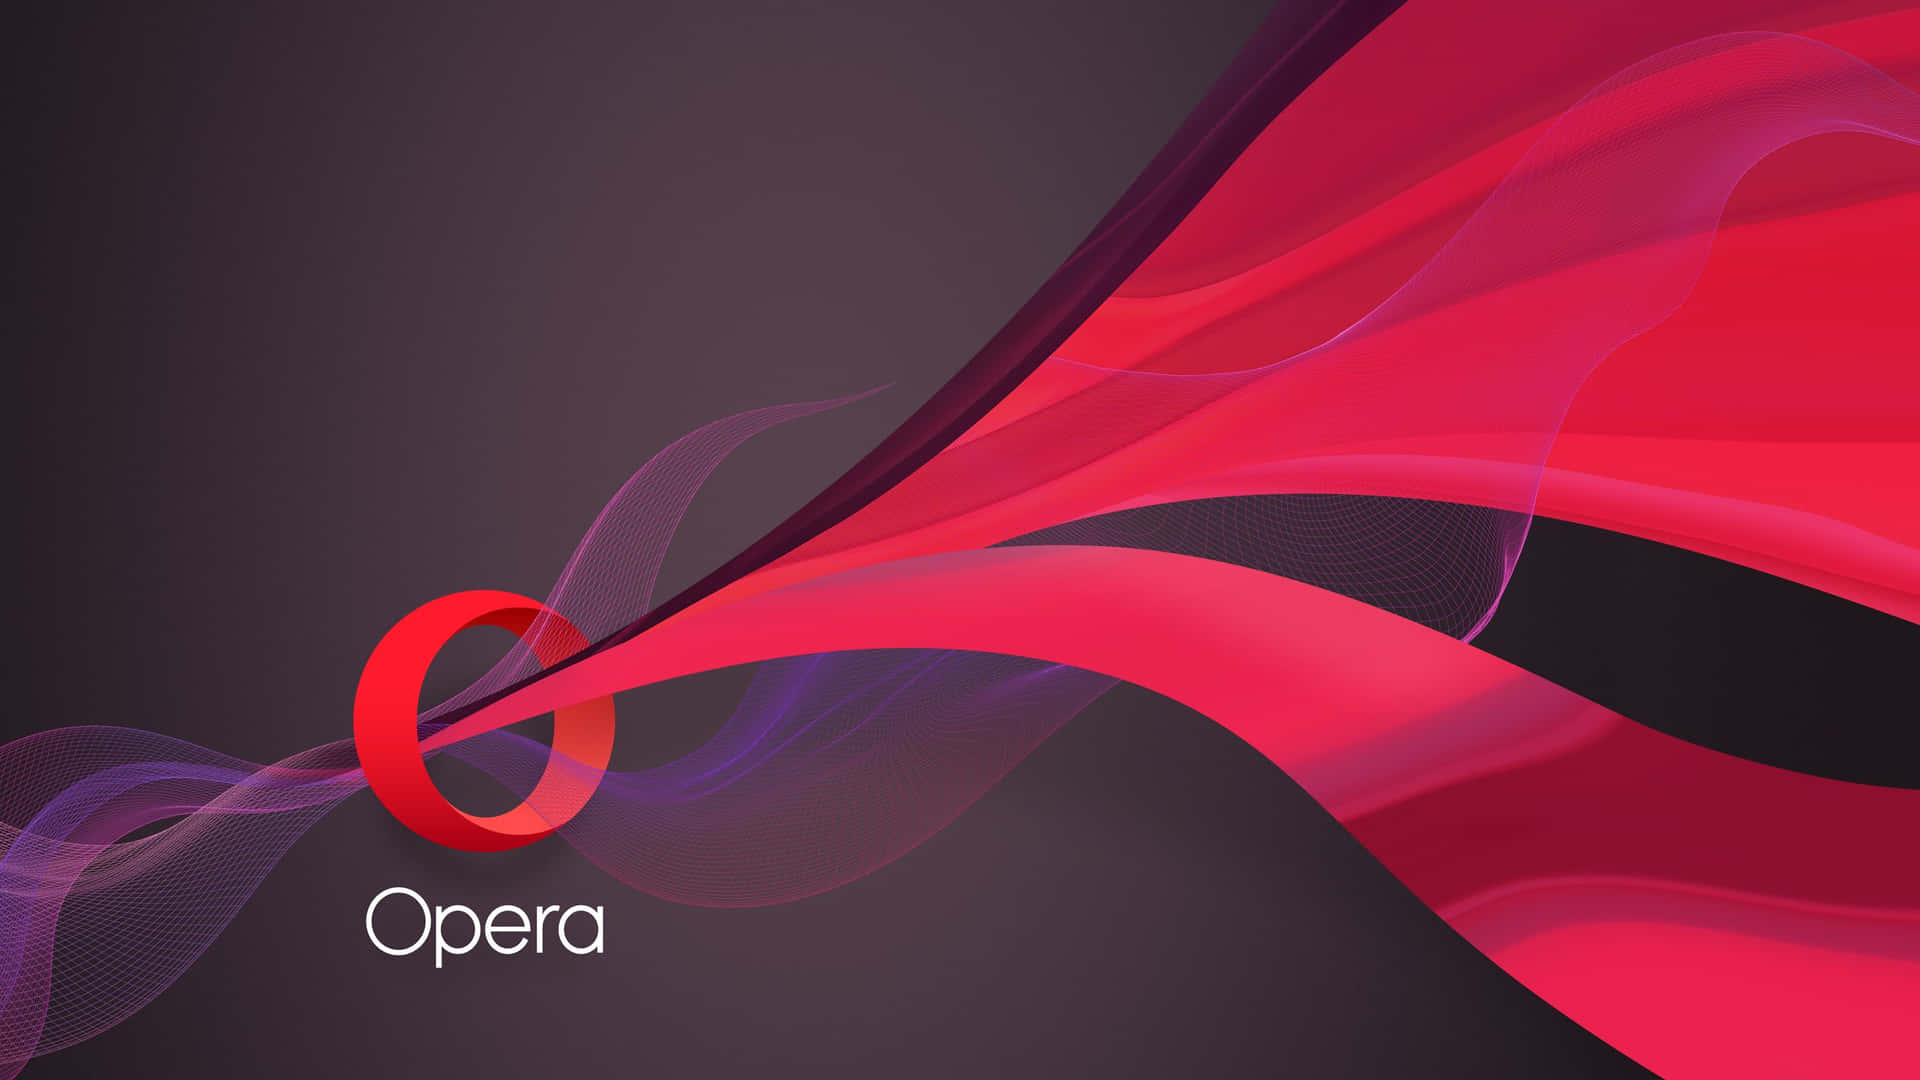 Opera Browser - Opera Browser - Opera Browser Wallpaper